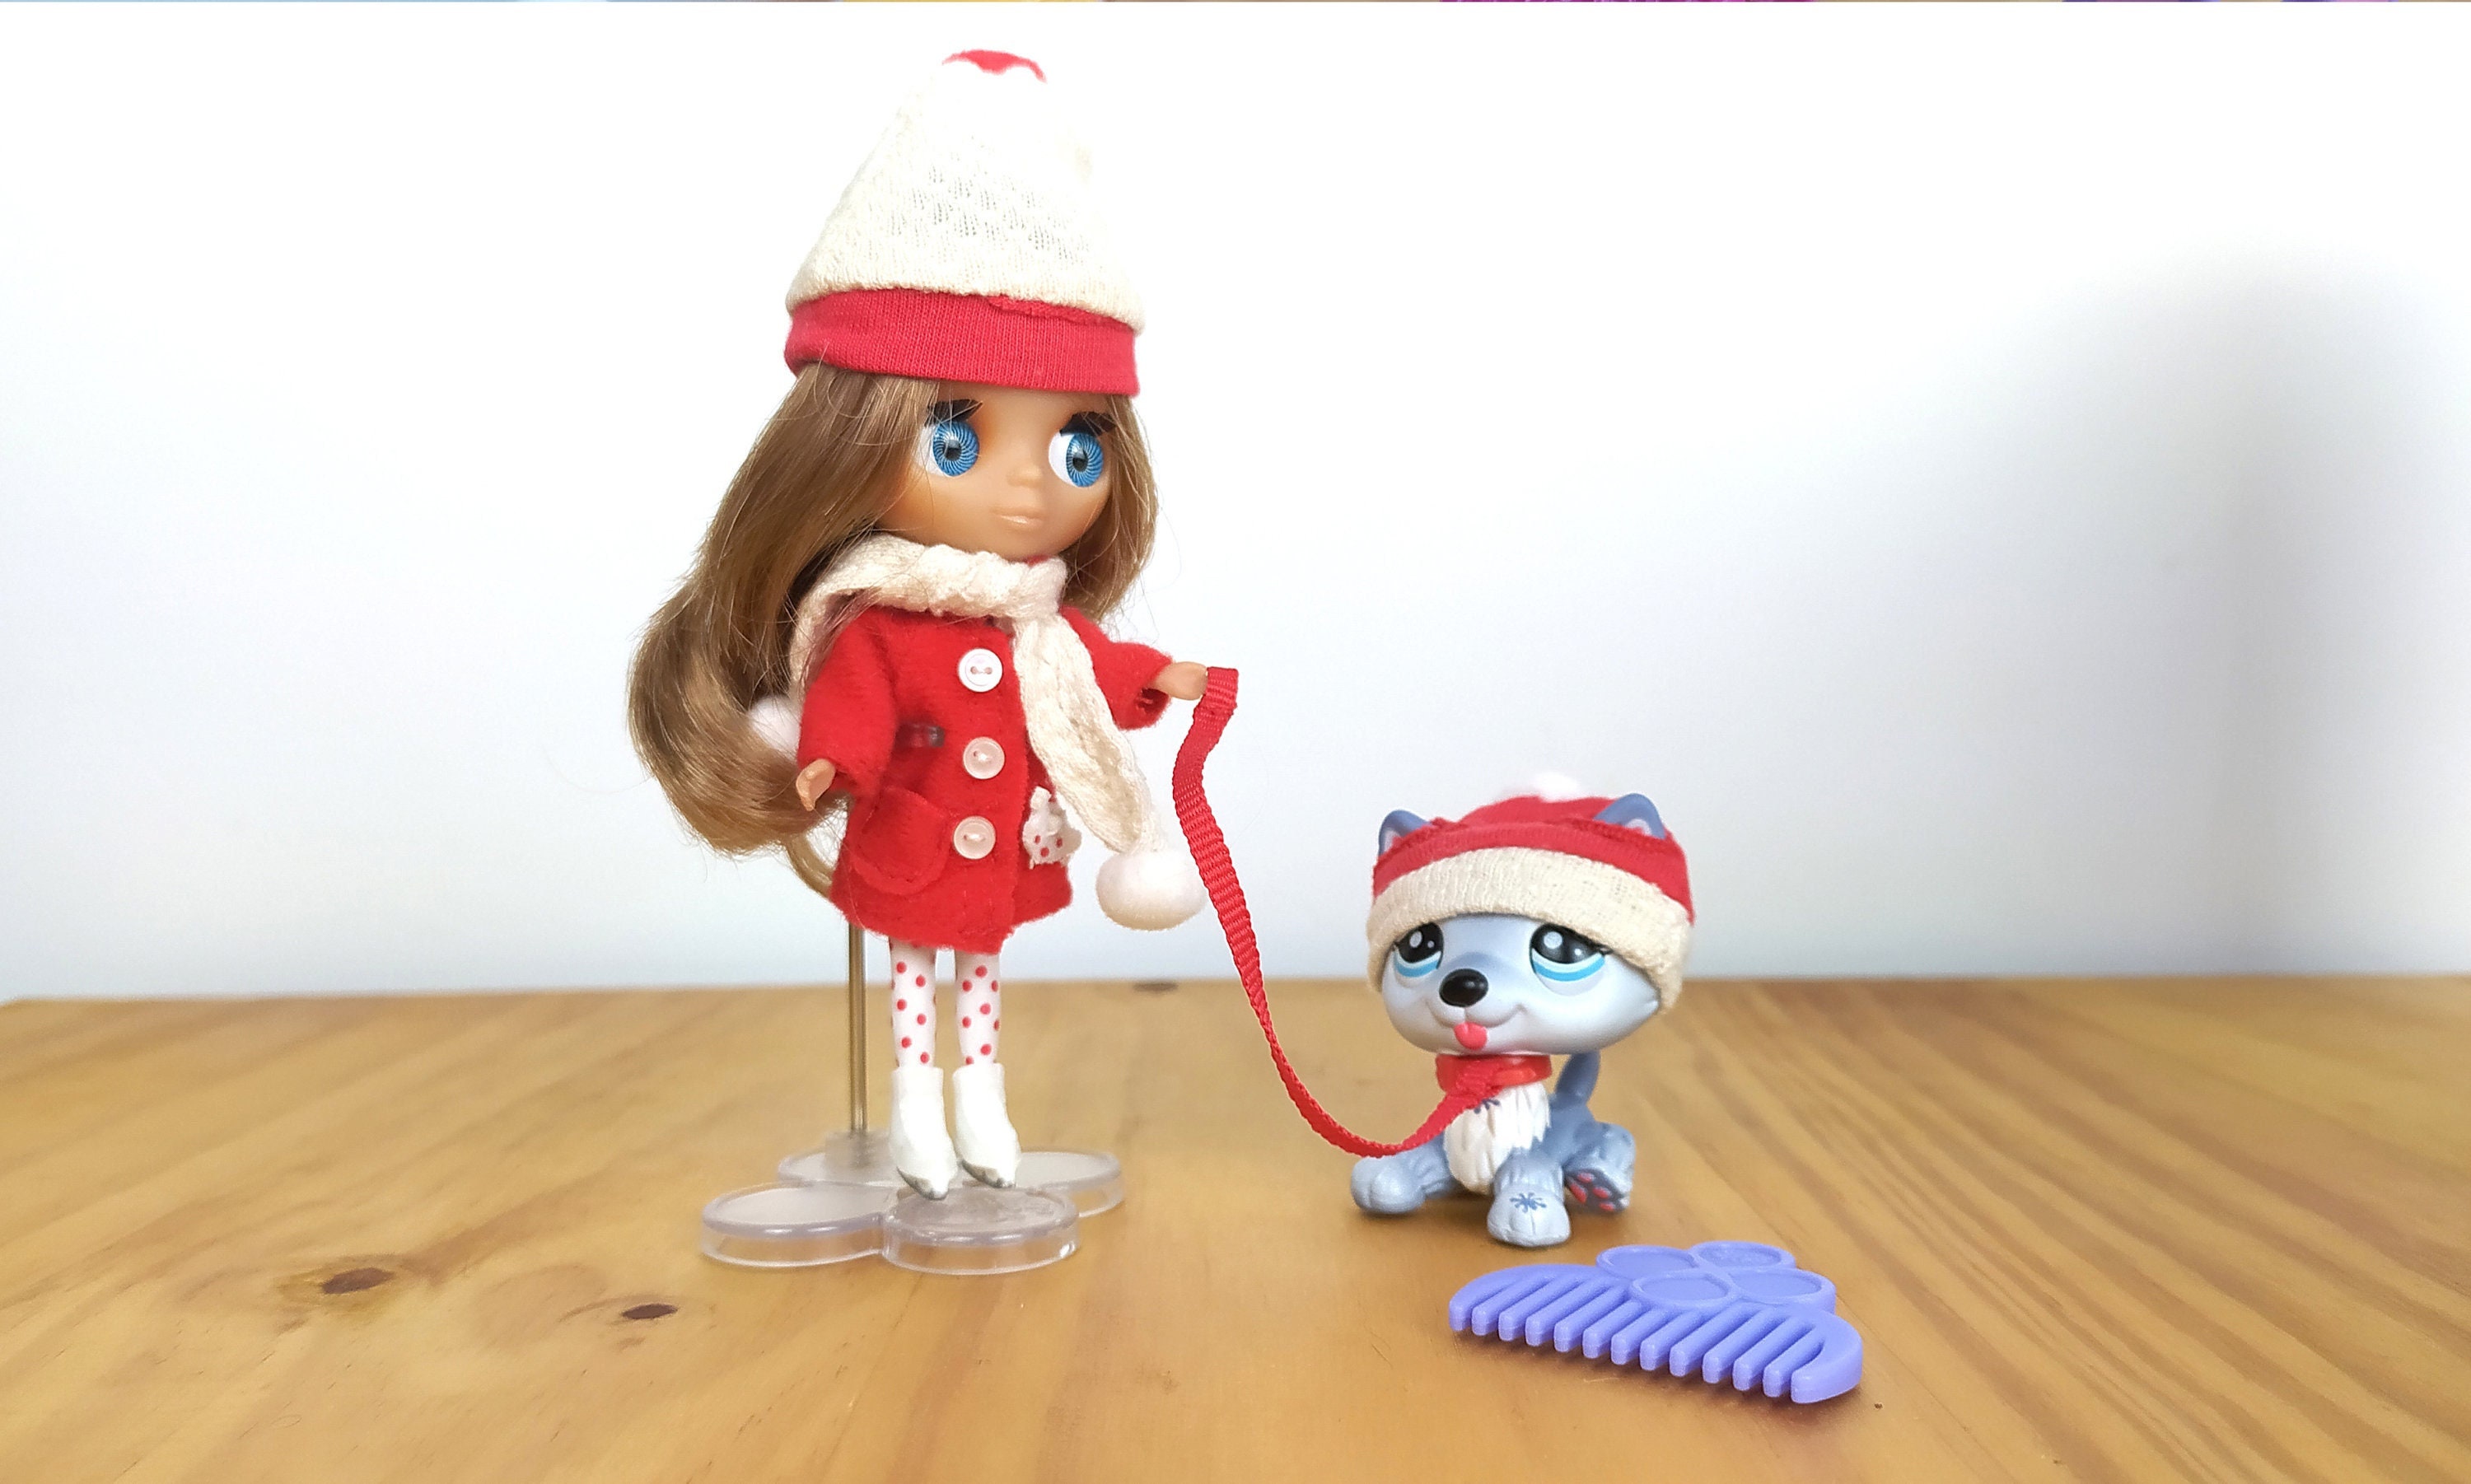 Littlest Pet Shop Blythe Doll Set Outdoor Afternoon